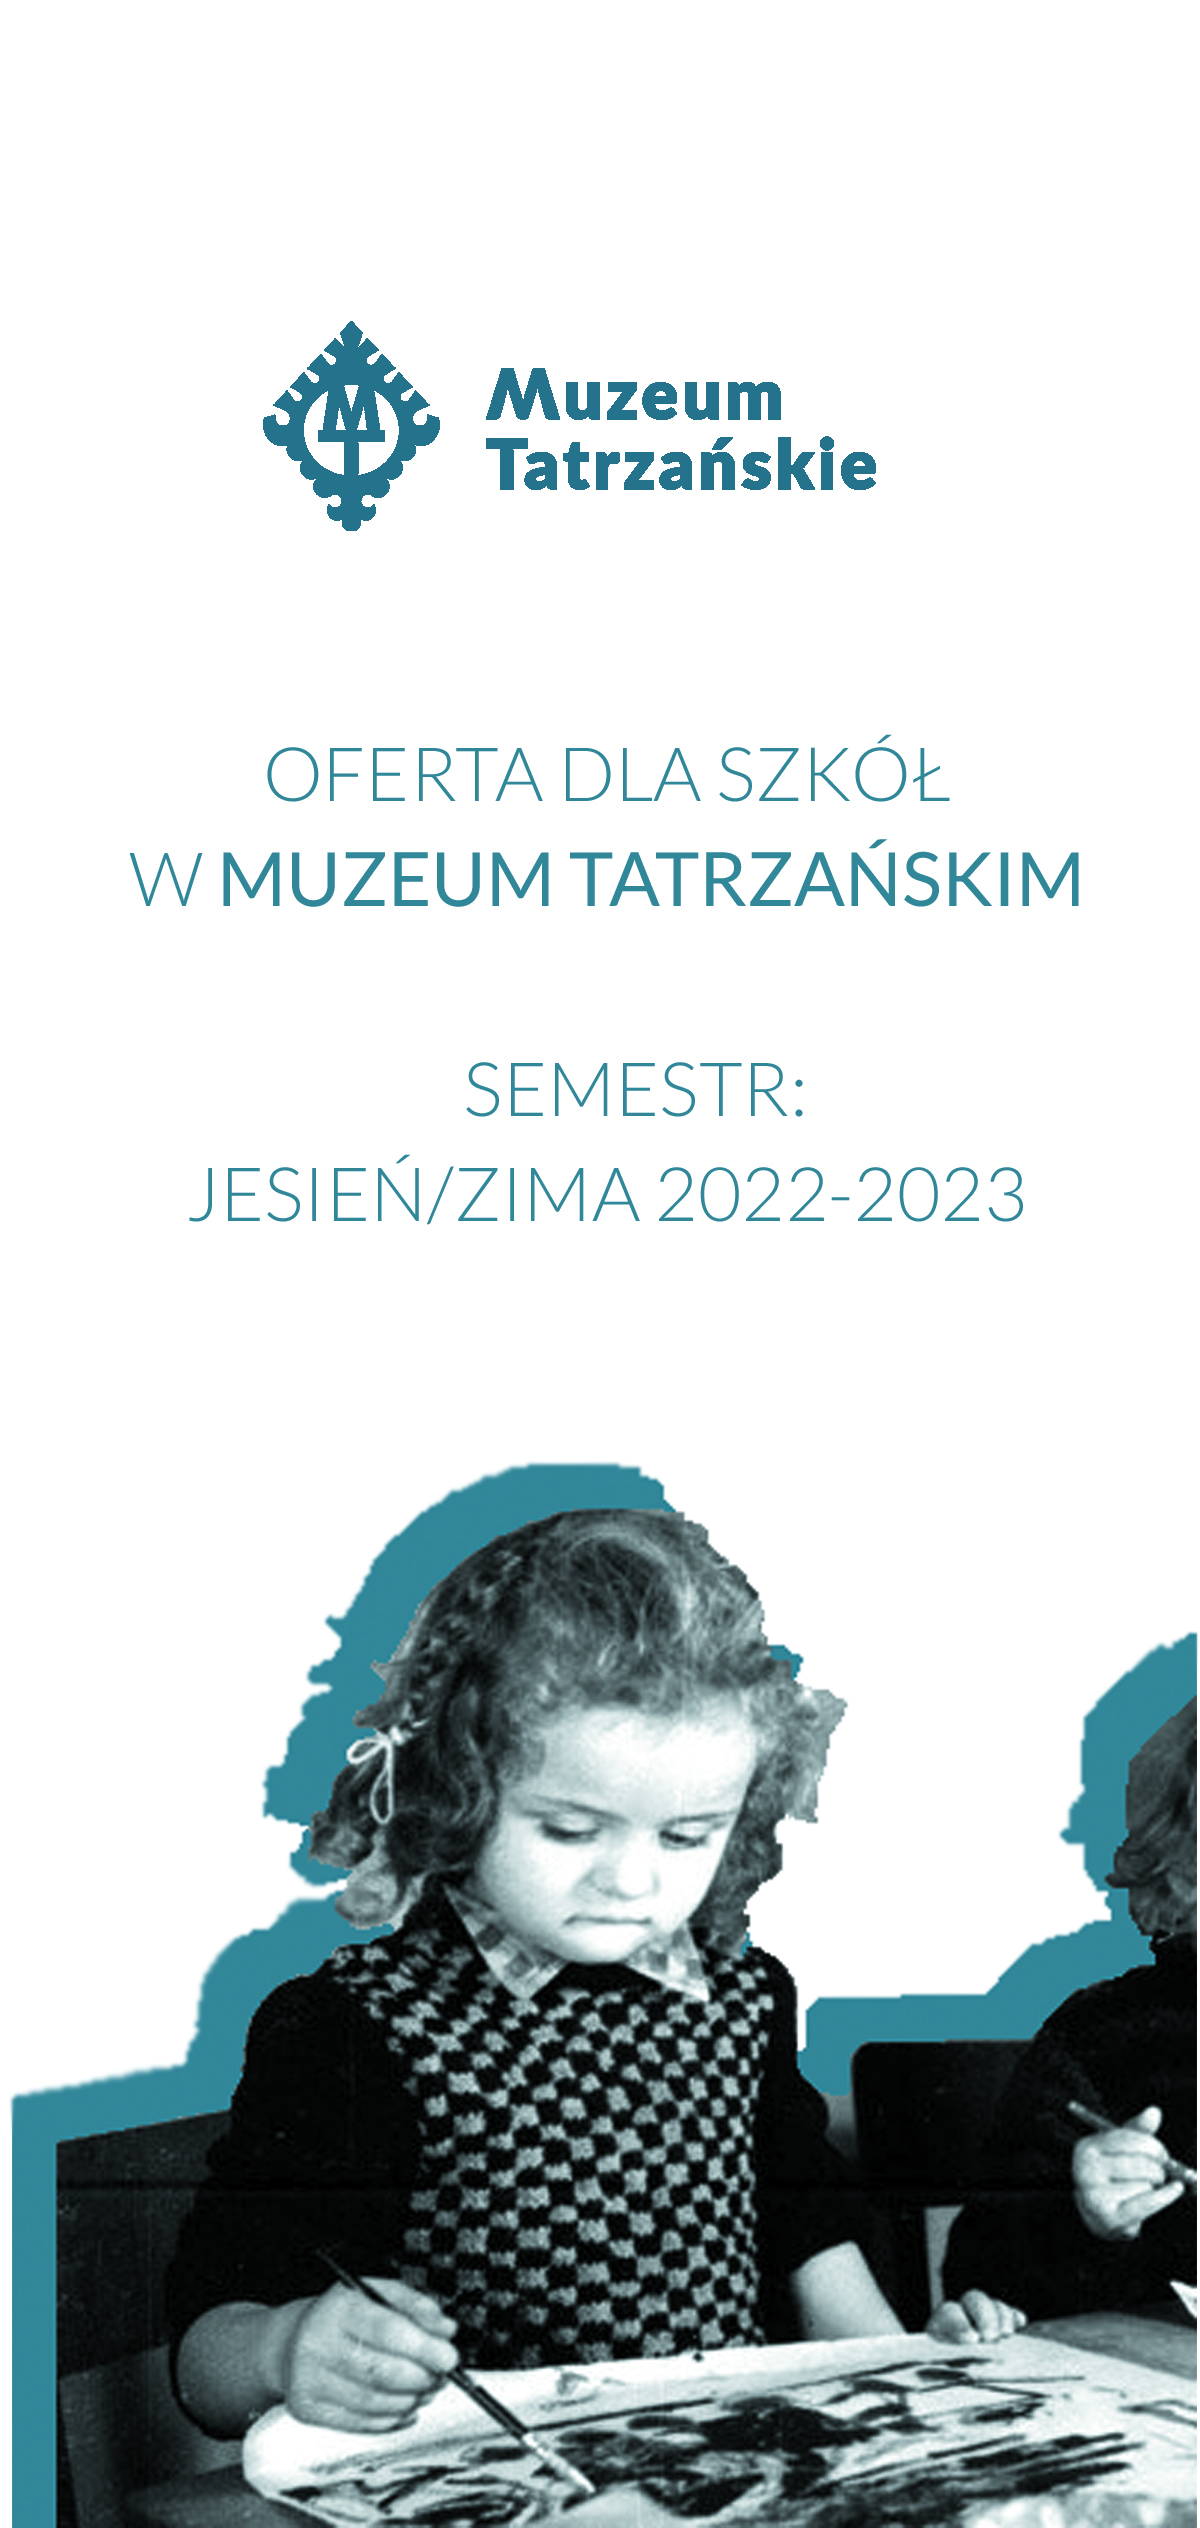 Muzeum Tatrzańskie, oferta dla szkół w Muzeum tatrzańskiem, semestr Jesień/zima 2022-2023